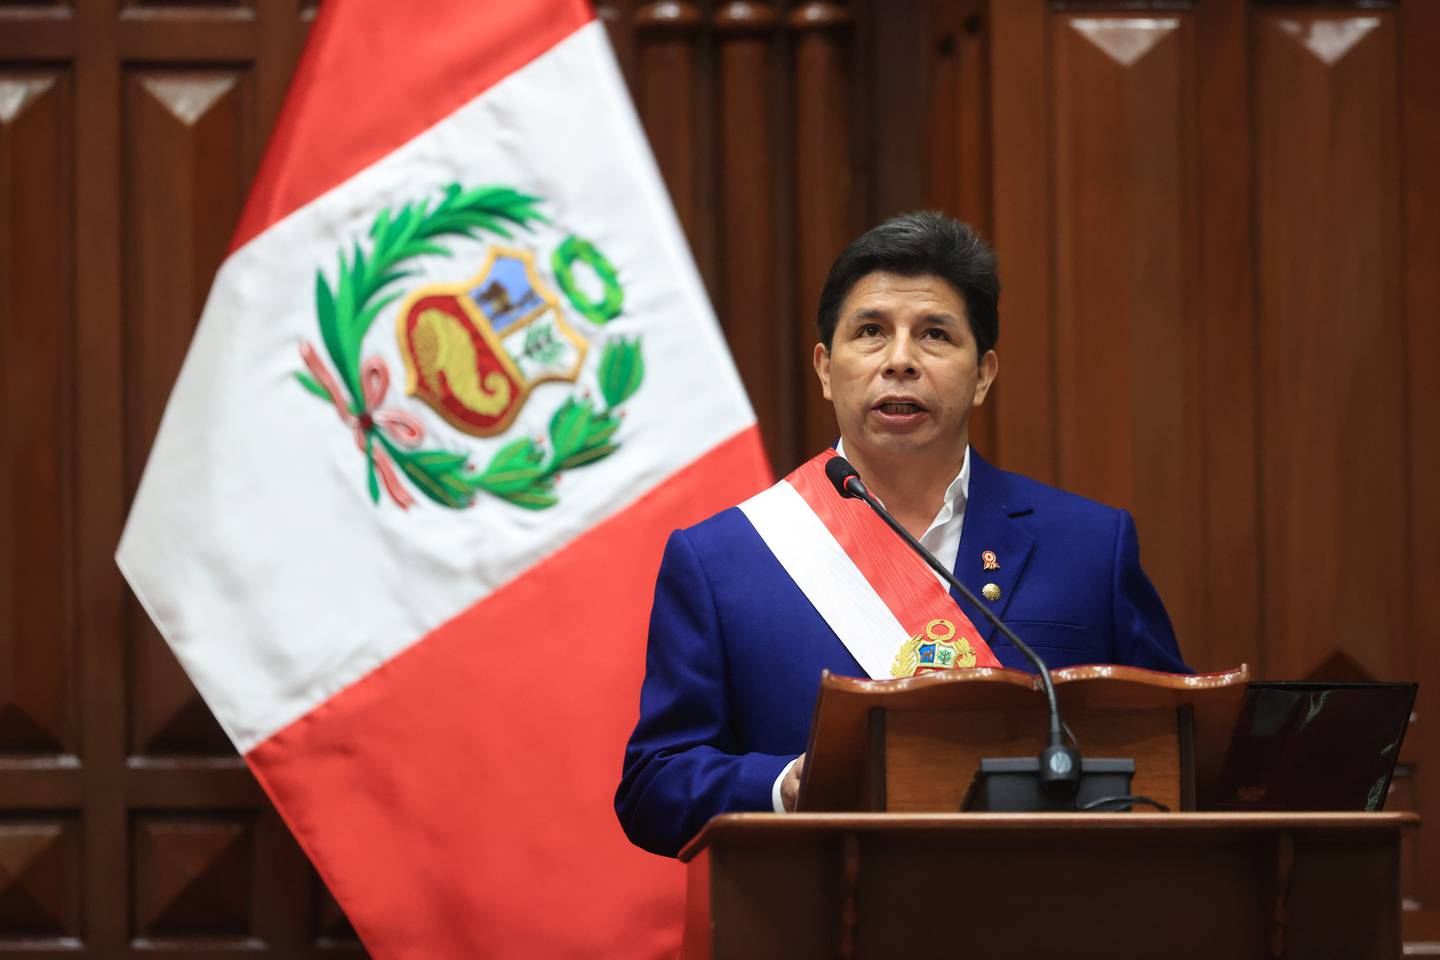 La Fiscalía General de Perú lleva a cabo cinco investigaciones preliminares contra Castillo, sus familiares y excolaboradores, algunos de los cuales se encuentran prófugos.